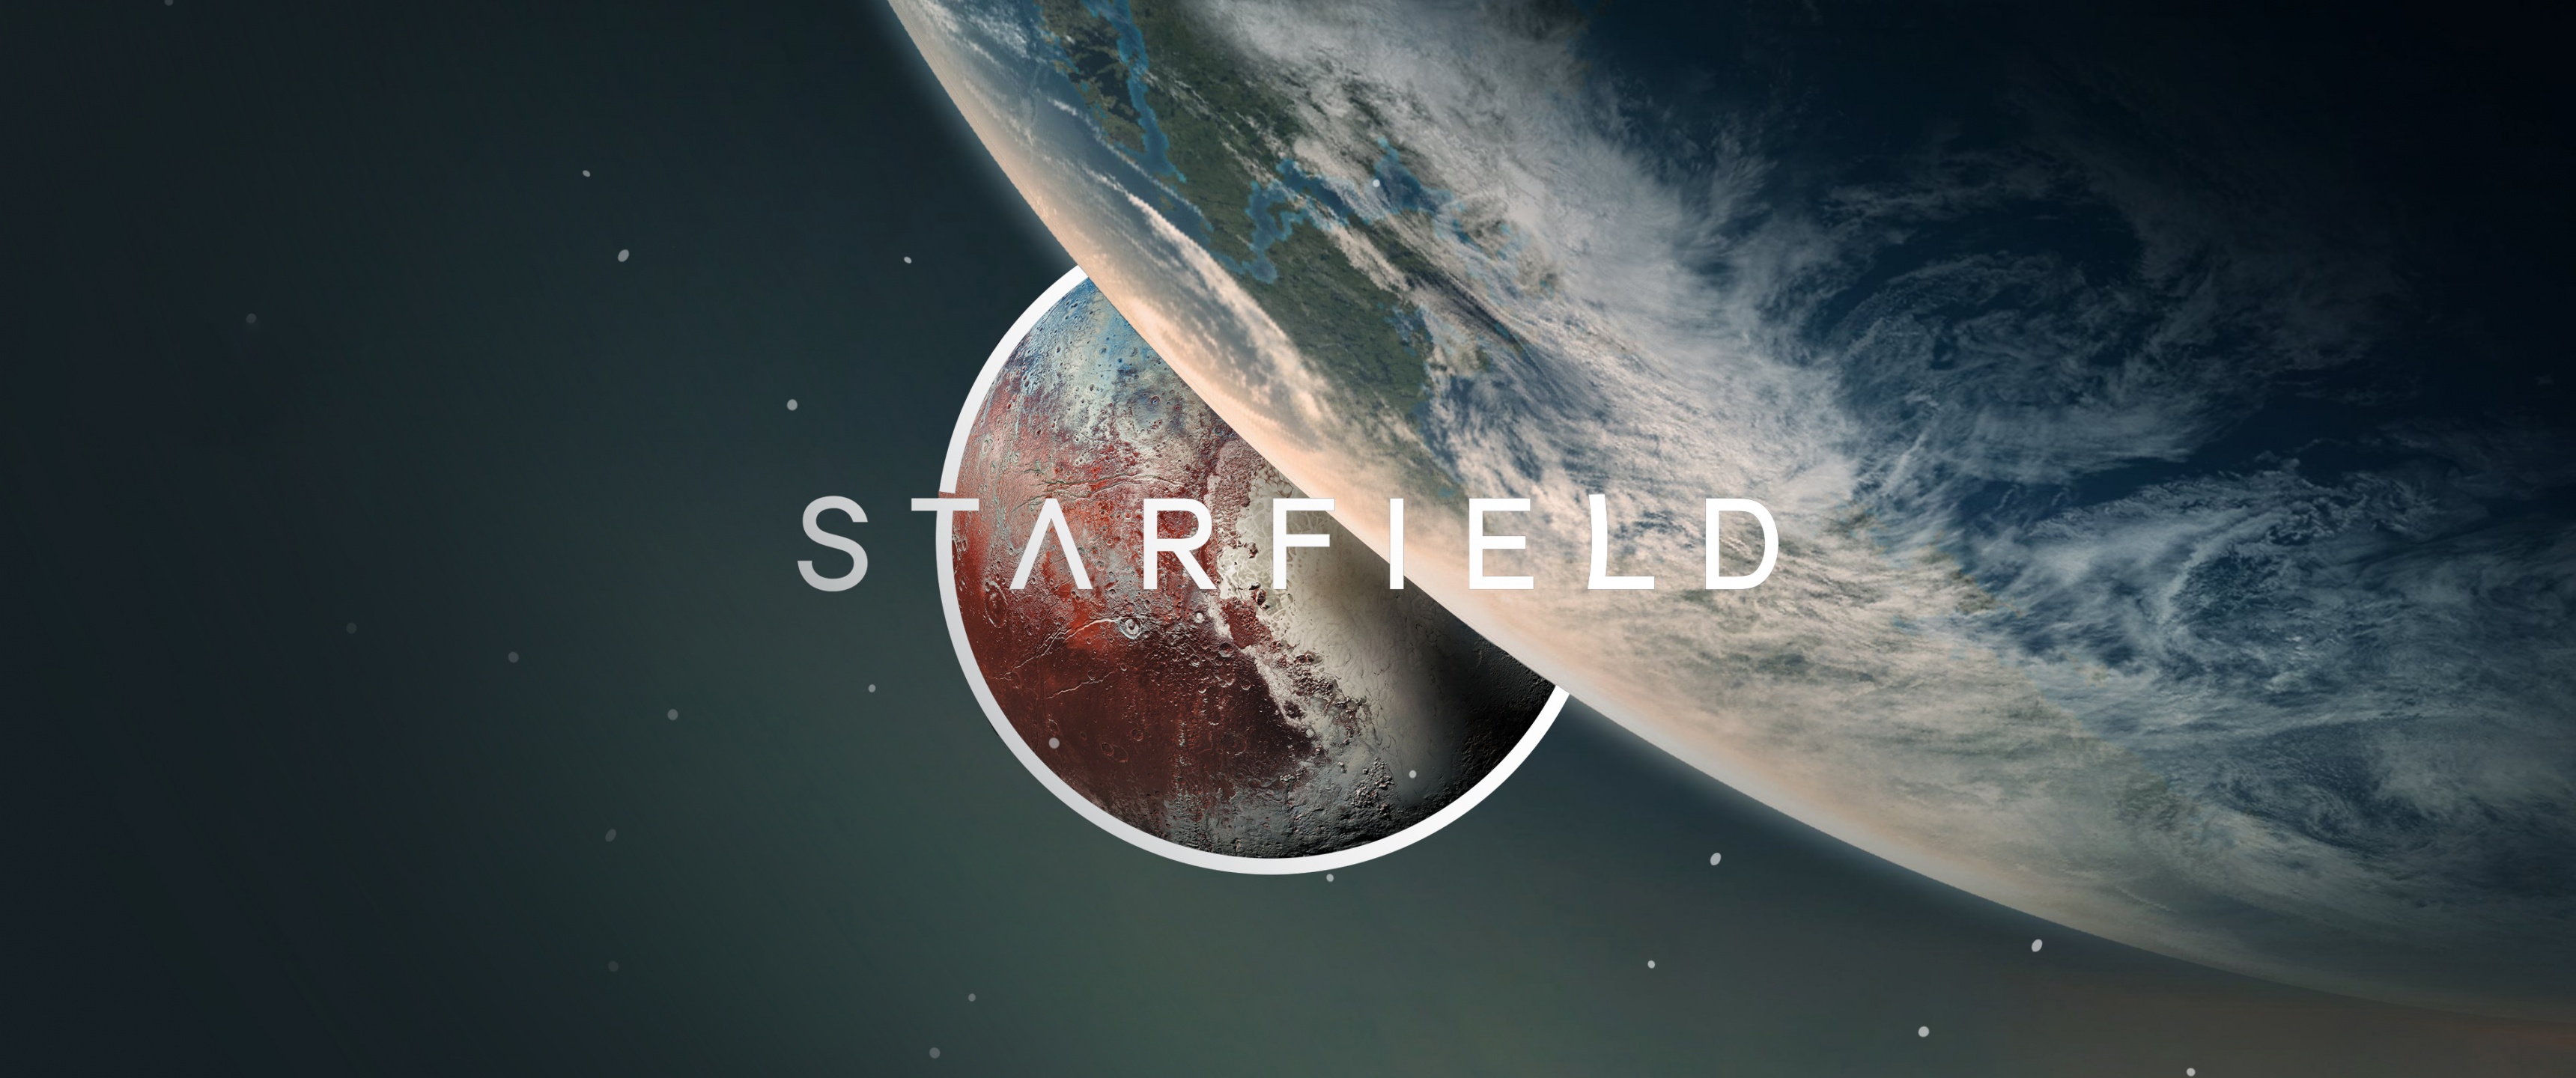 Starfield Wallpaper 4K, 8K, Game Art, 2023 Games, 5K